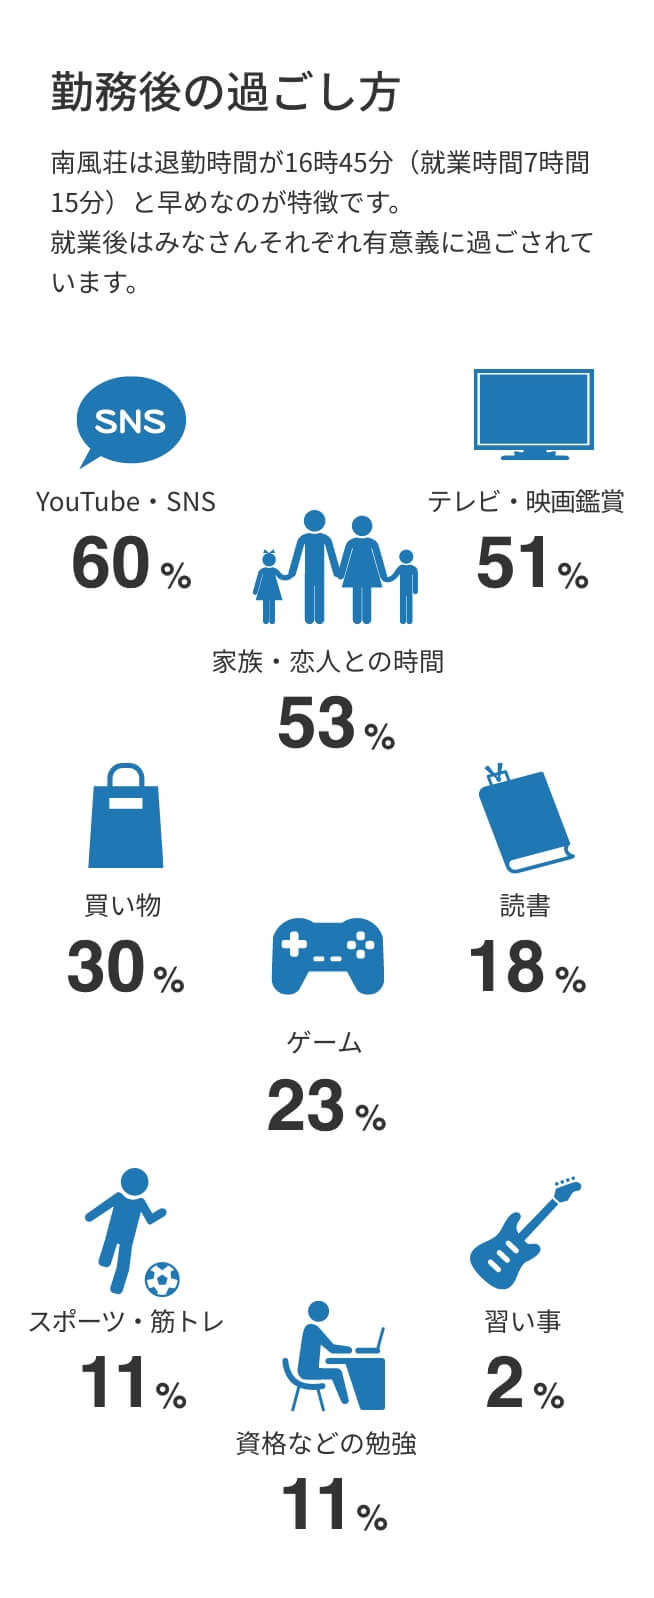 勤務後の過ごし方：YouTube・SNS60%、家族・恋人との時間53%、テレビ・映画鑑賞51%、買い物30%、ゲーム23%、読書18%、スポーツ・筋トレ11%、資格などの勉強11%、習い事2%